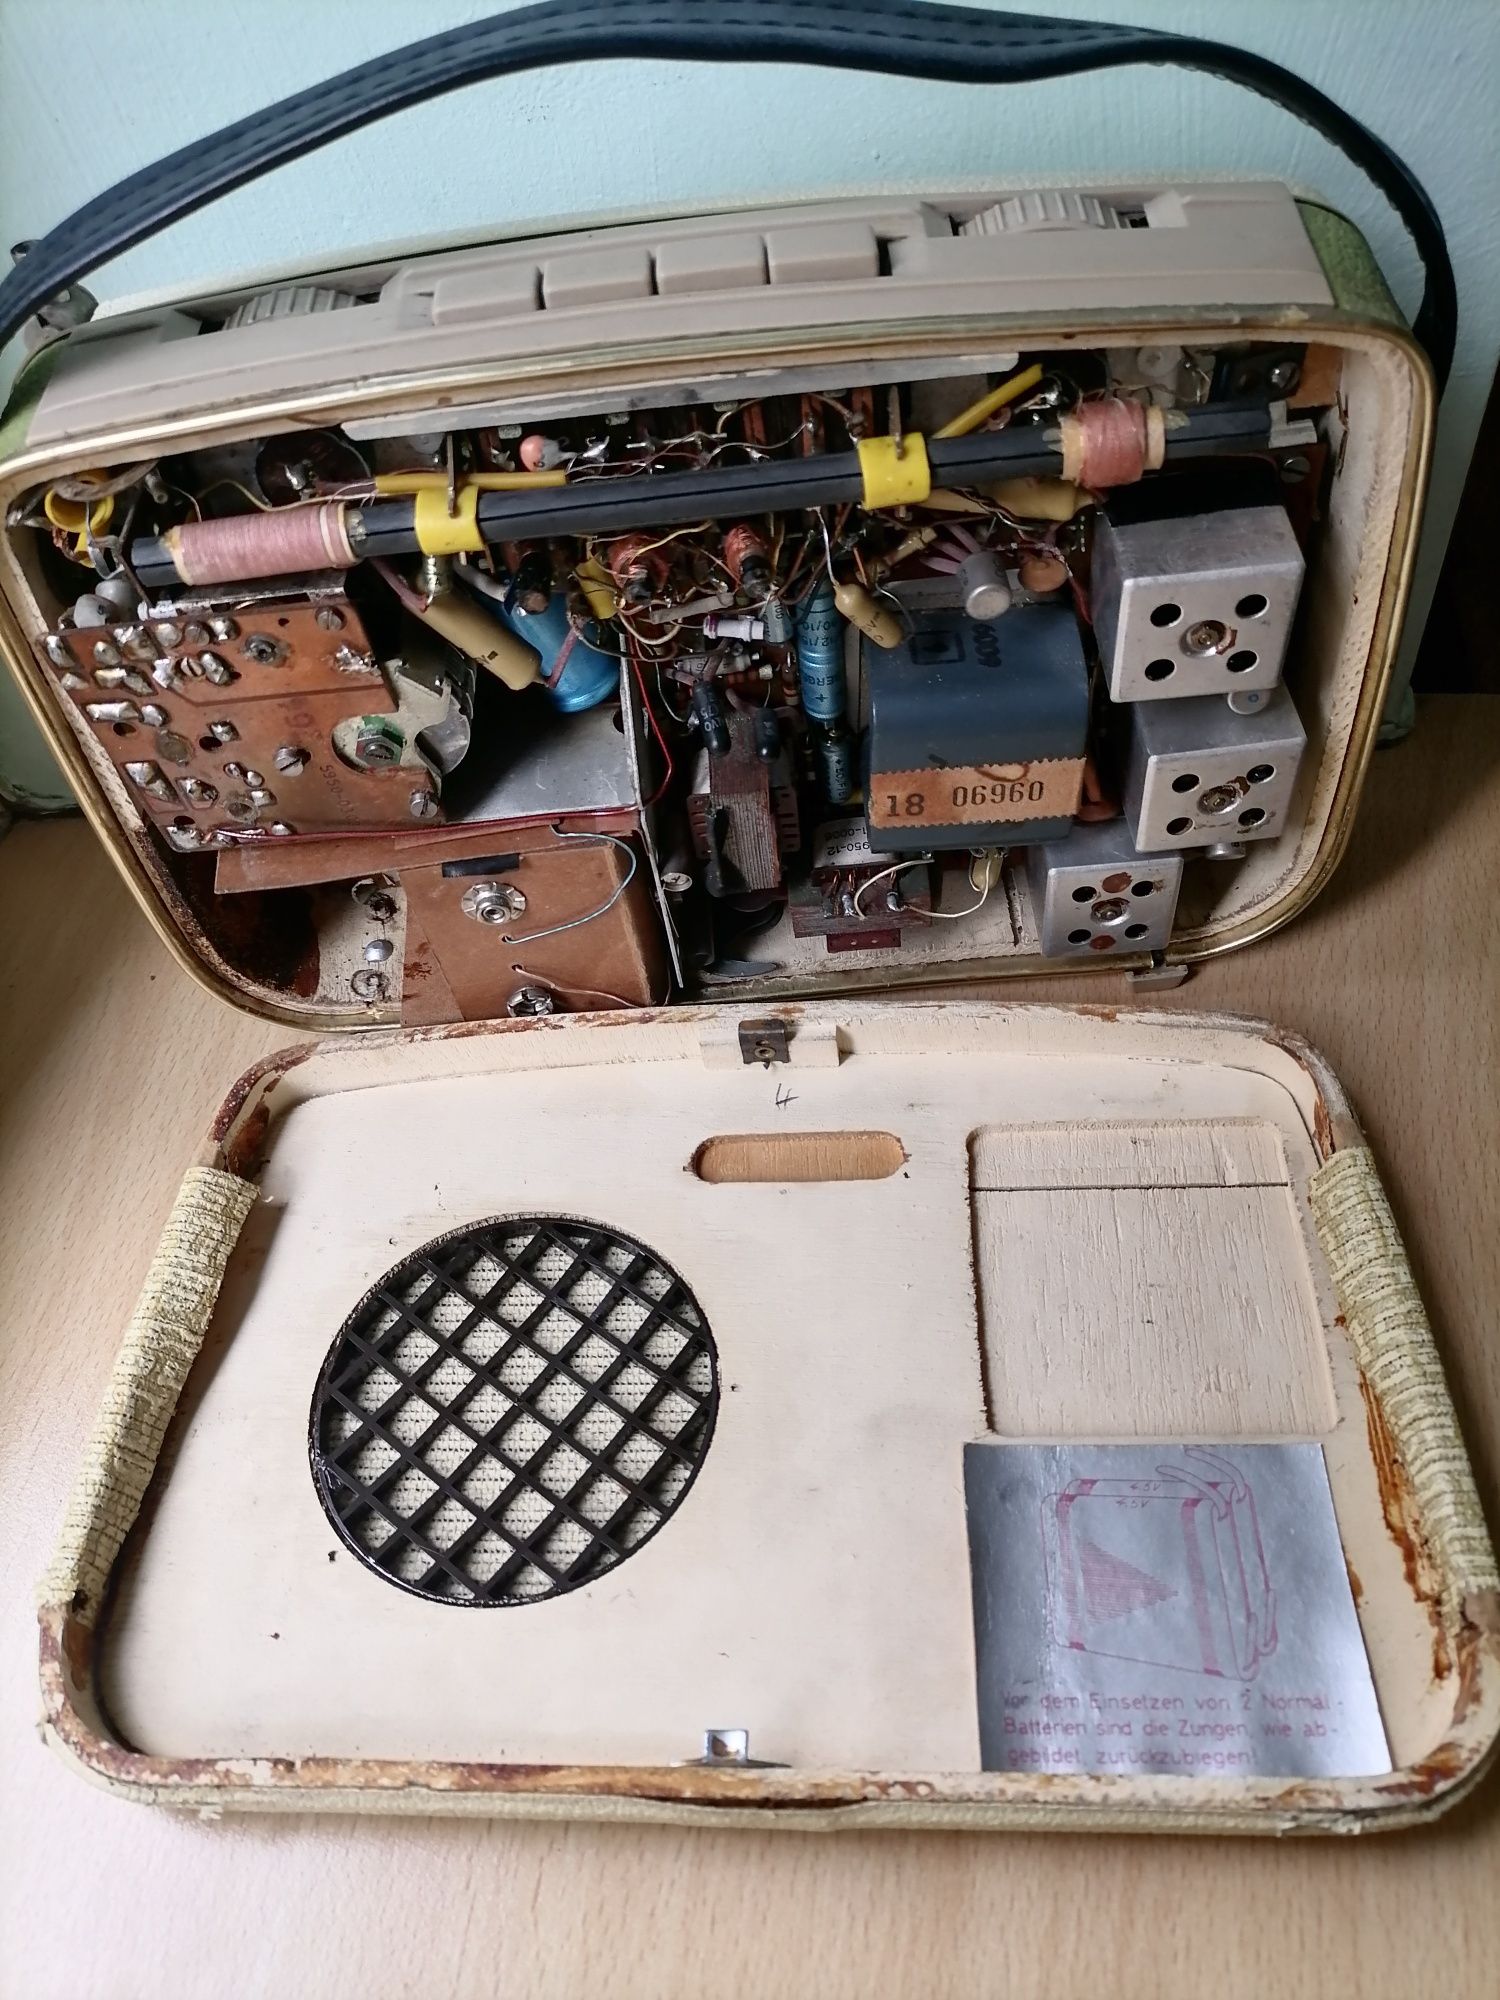 Stare radio tranzystorowe z lat 60 tych